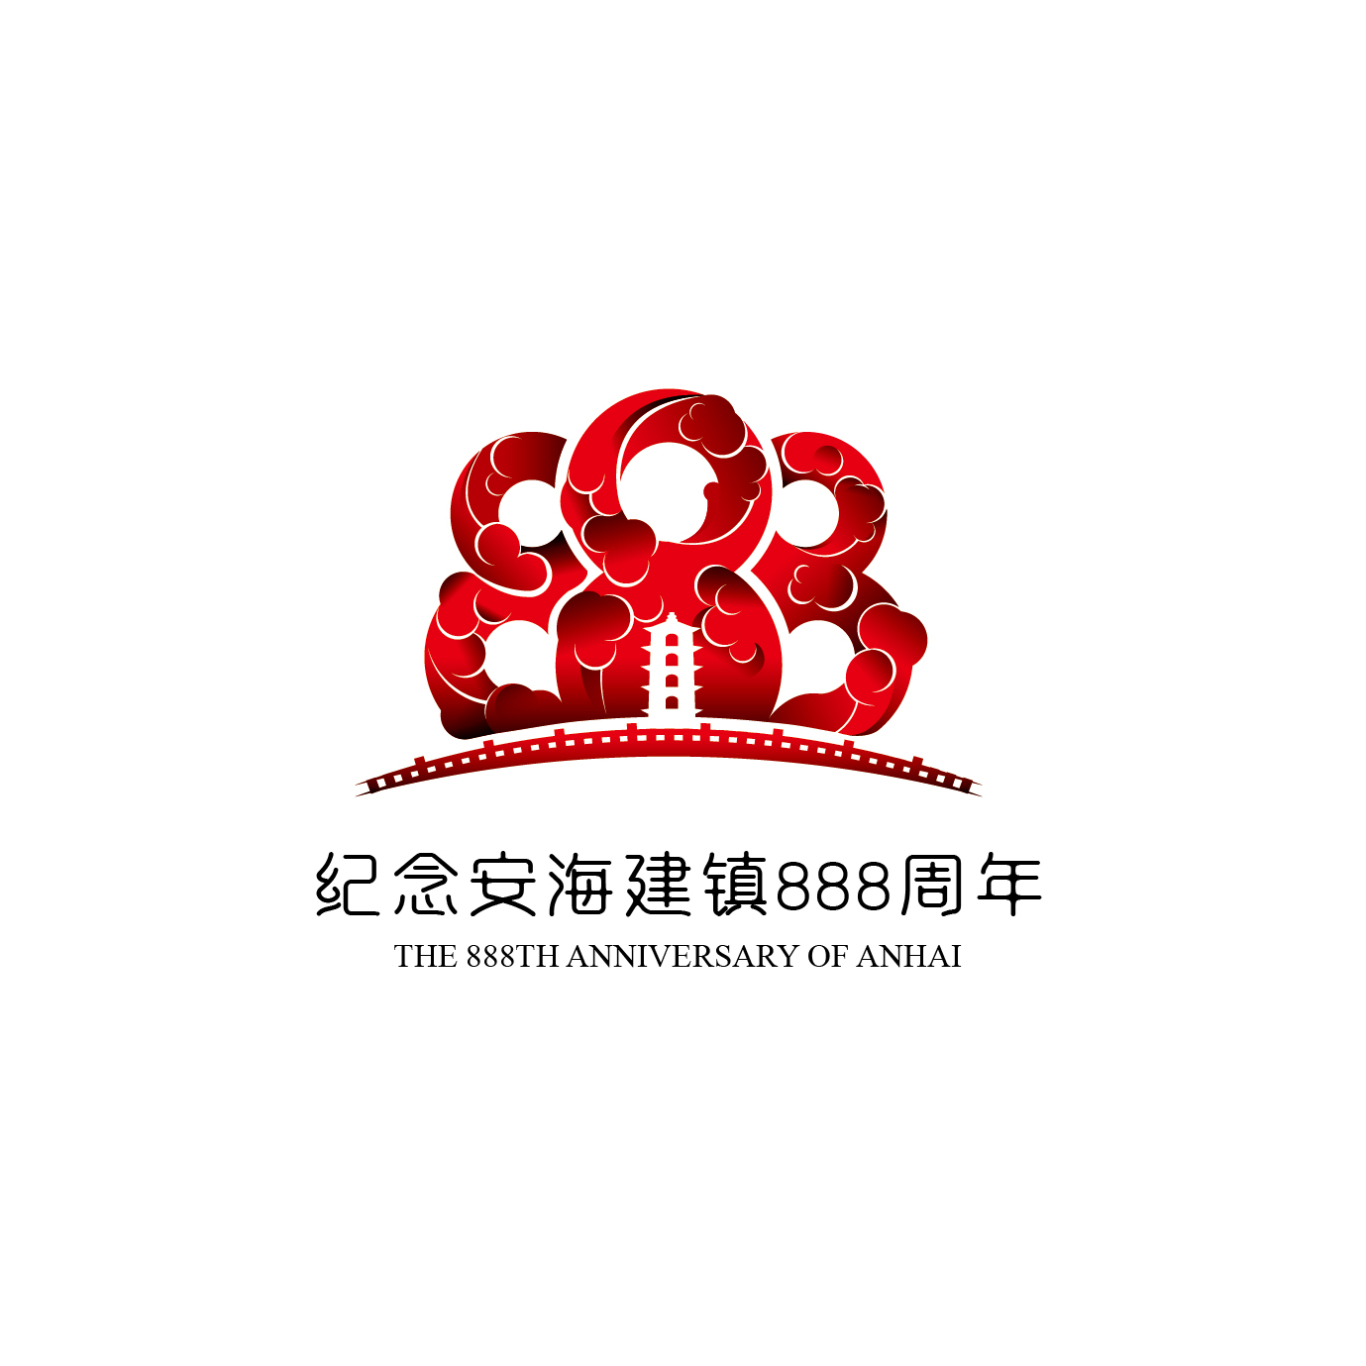 安海建镇888周年Logo设计图0